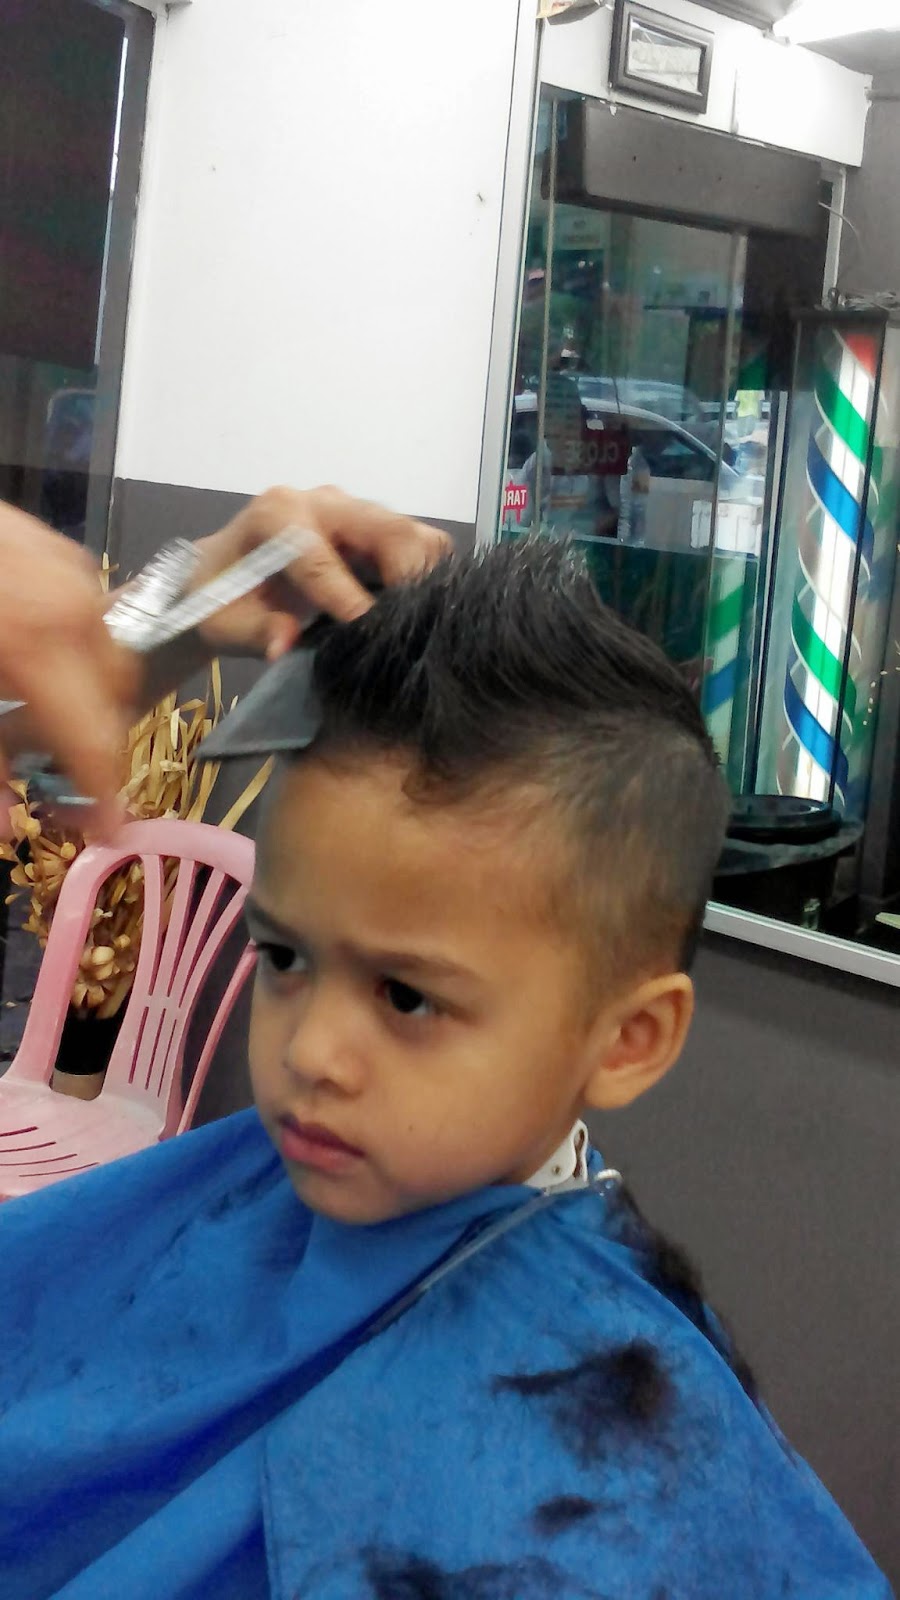 Gunting rambut budak lelaki